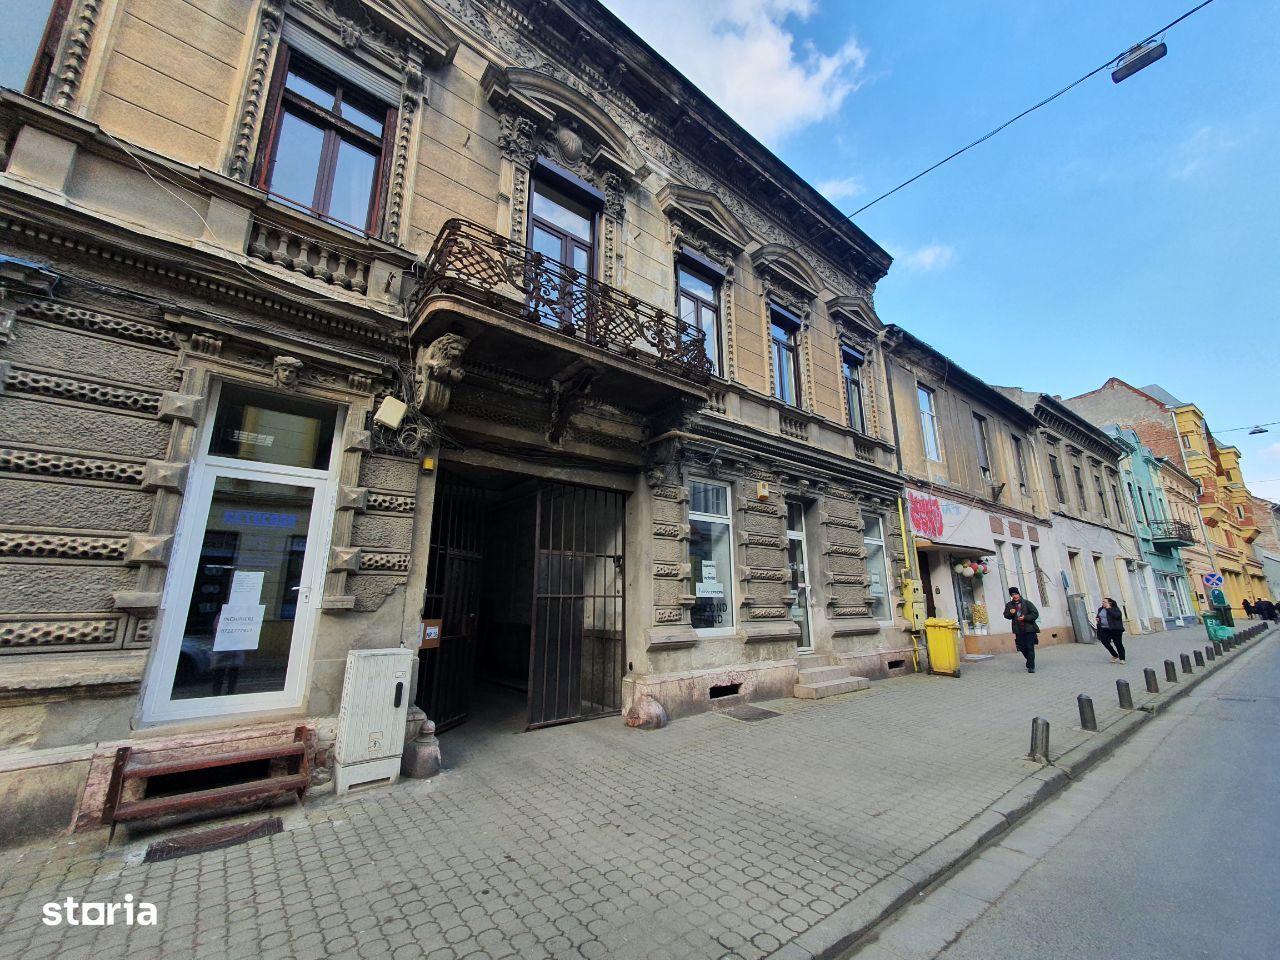 Apartament 2 camere in centrul Aradului cu posibilitate de mansardare